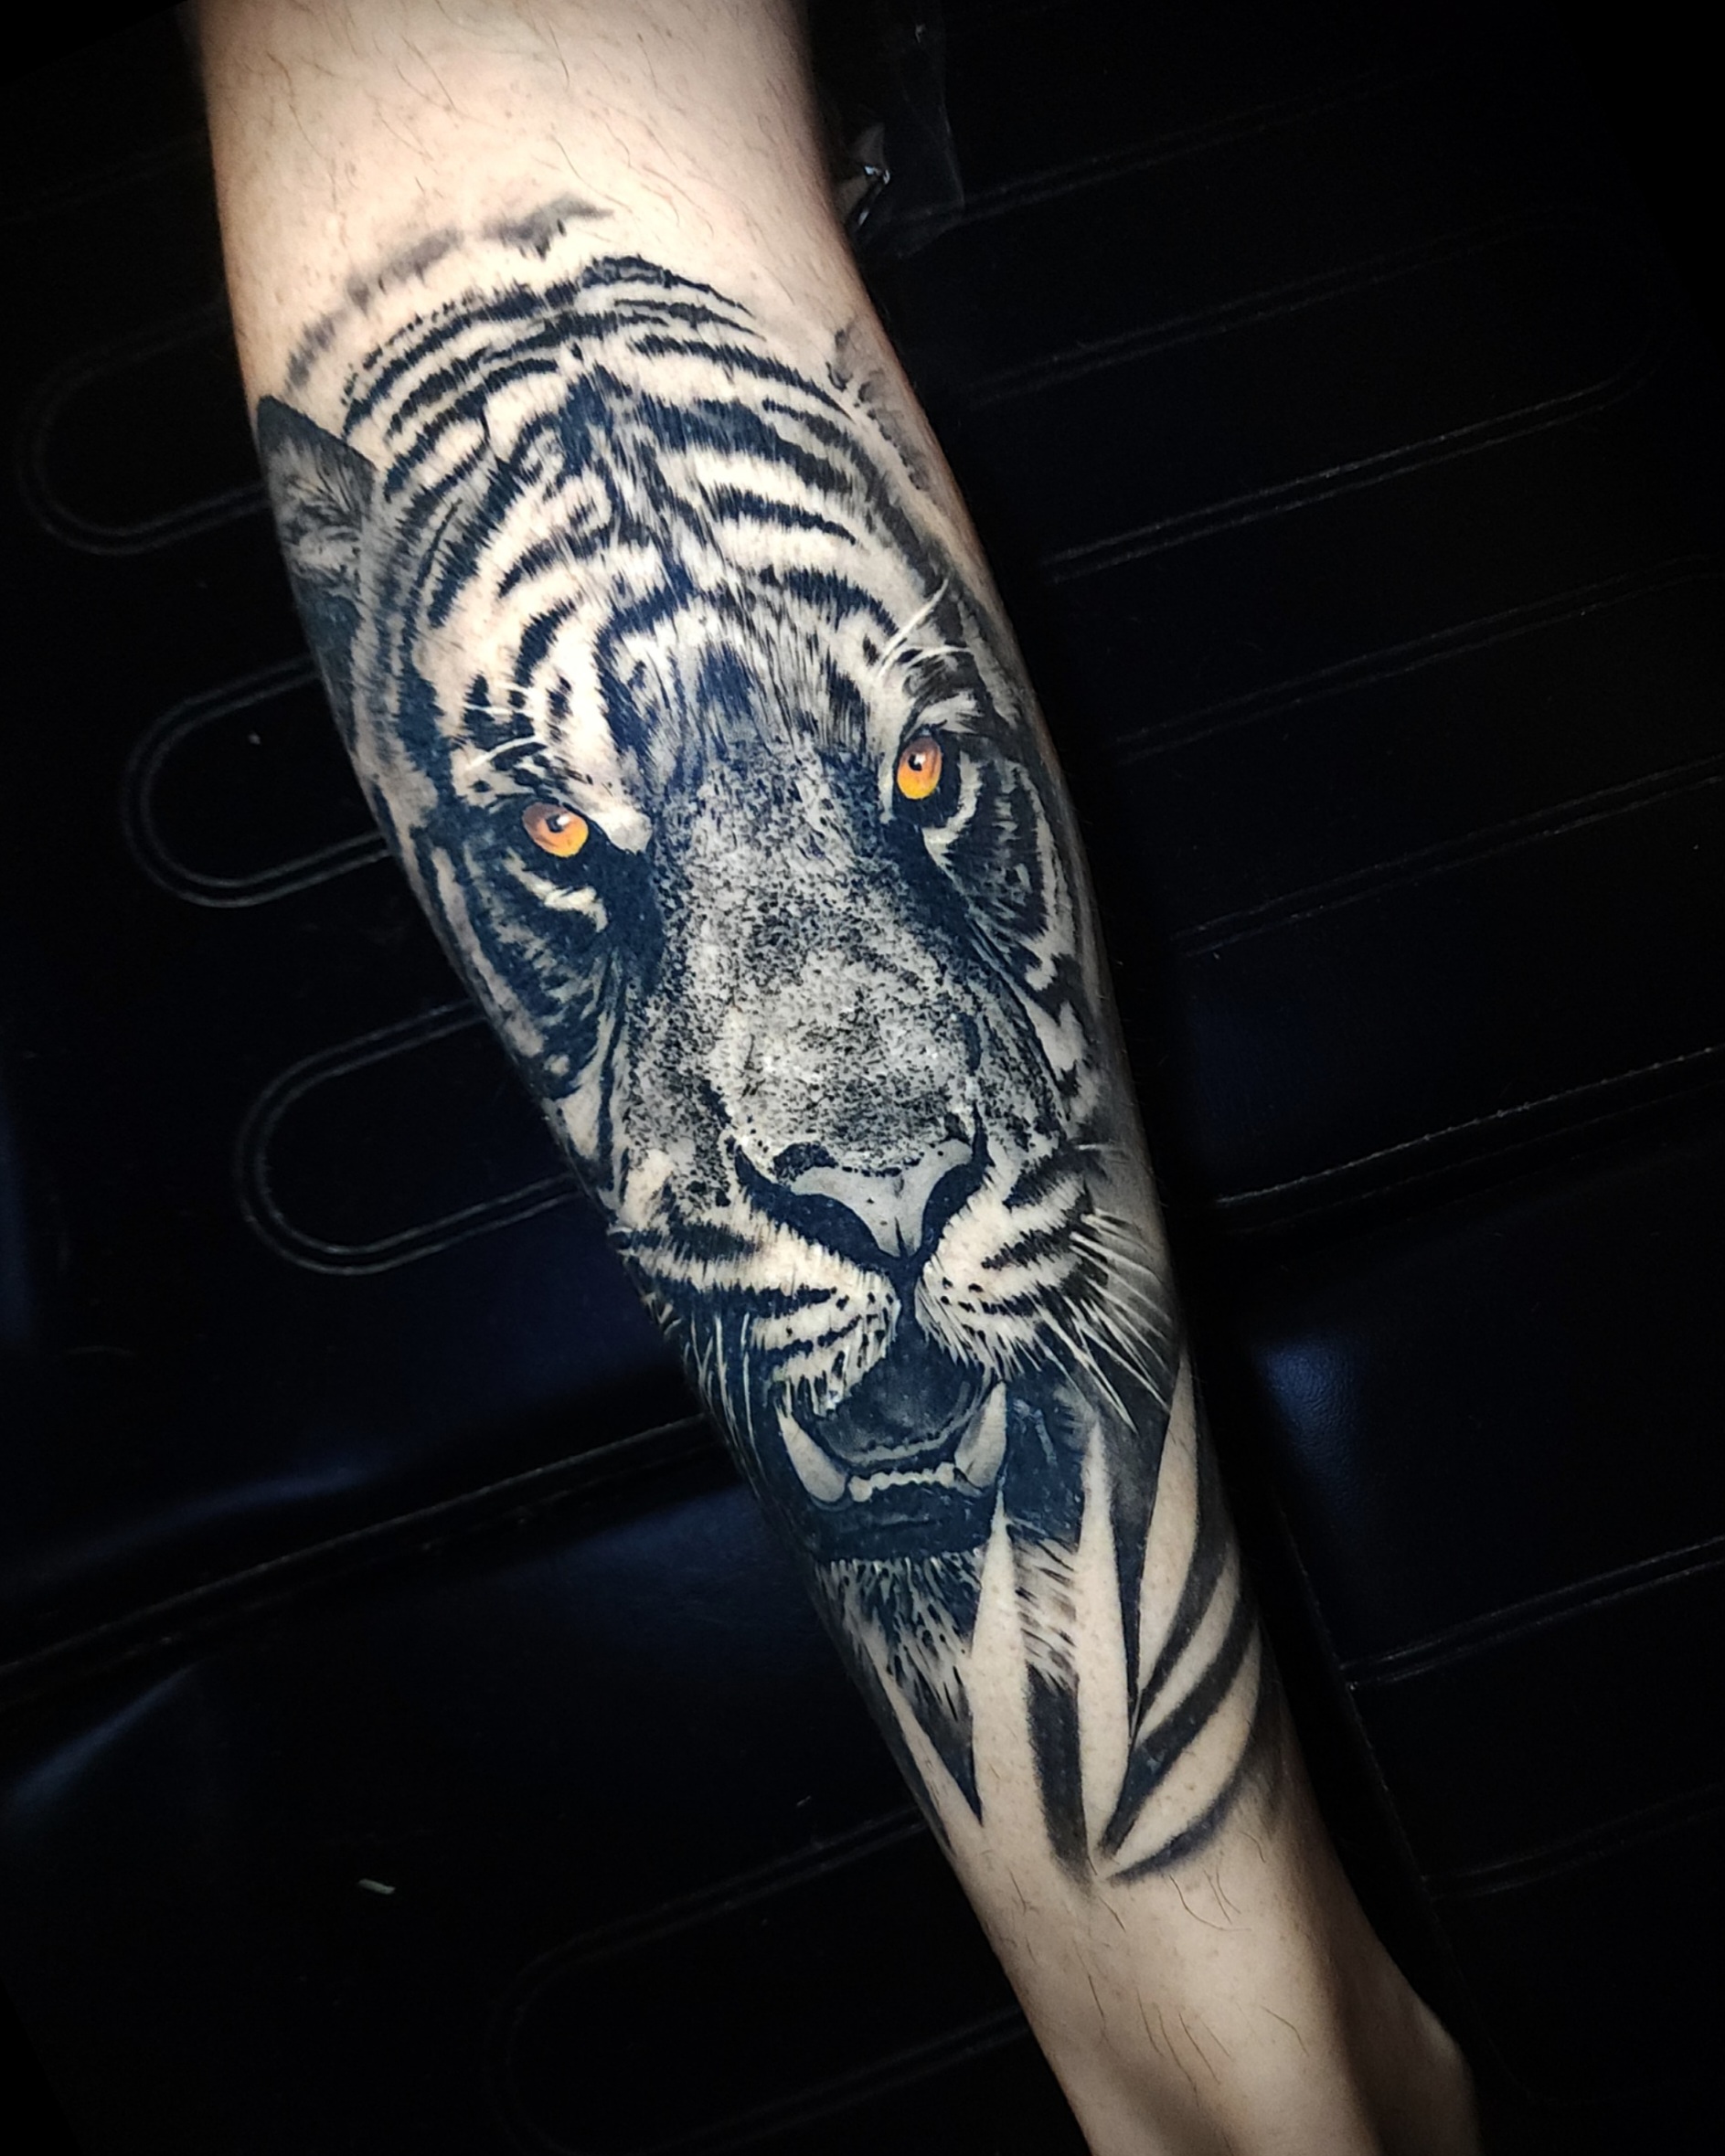 4 x Realistic tiger tattoo design digital download – TattooDesignStock